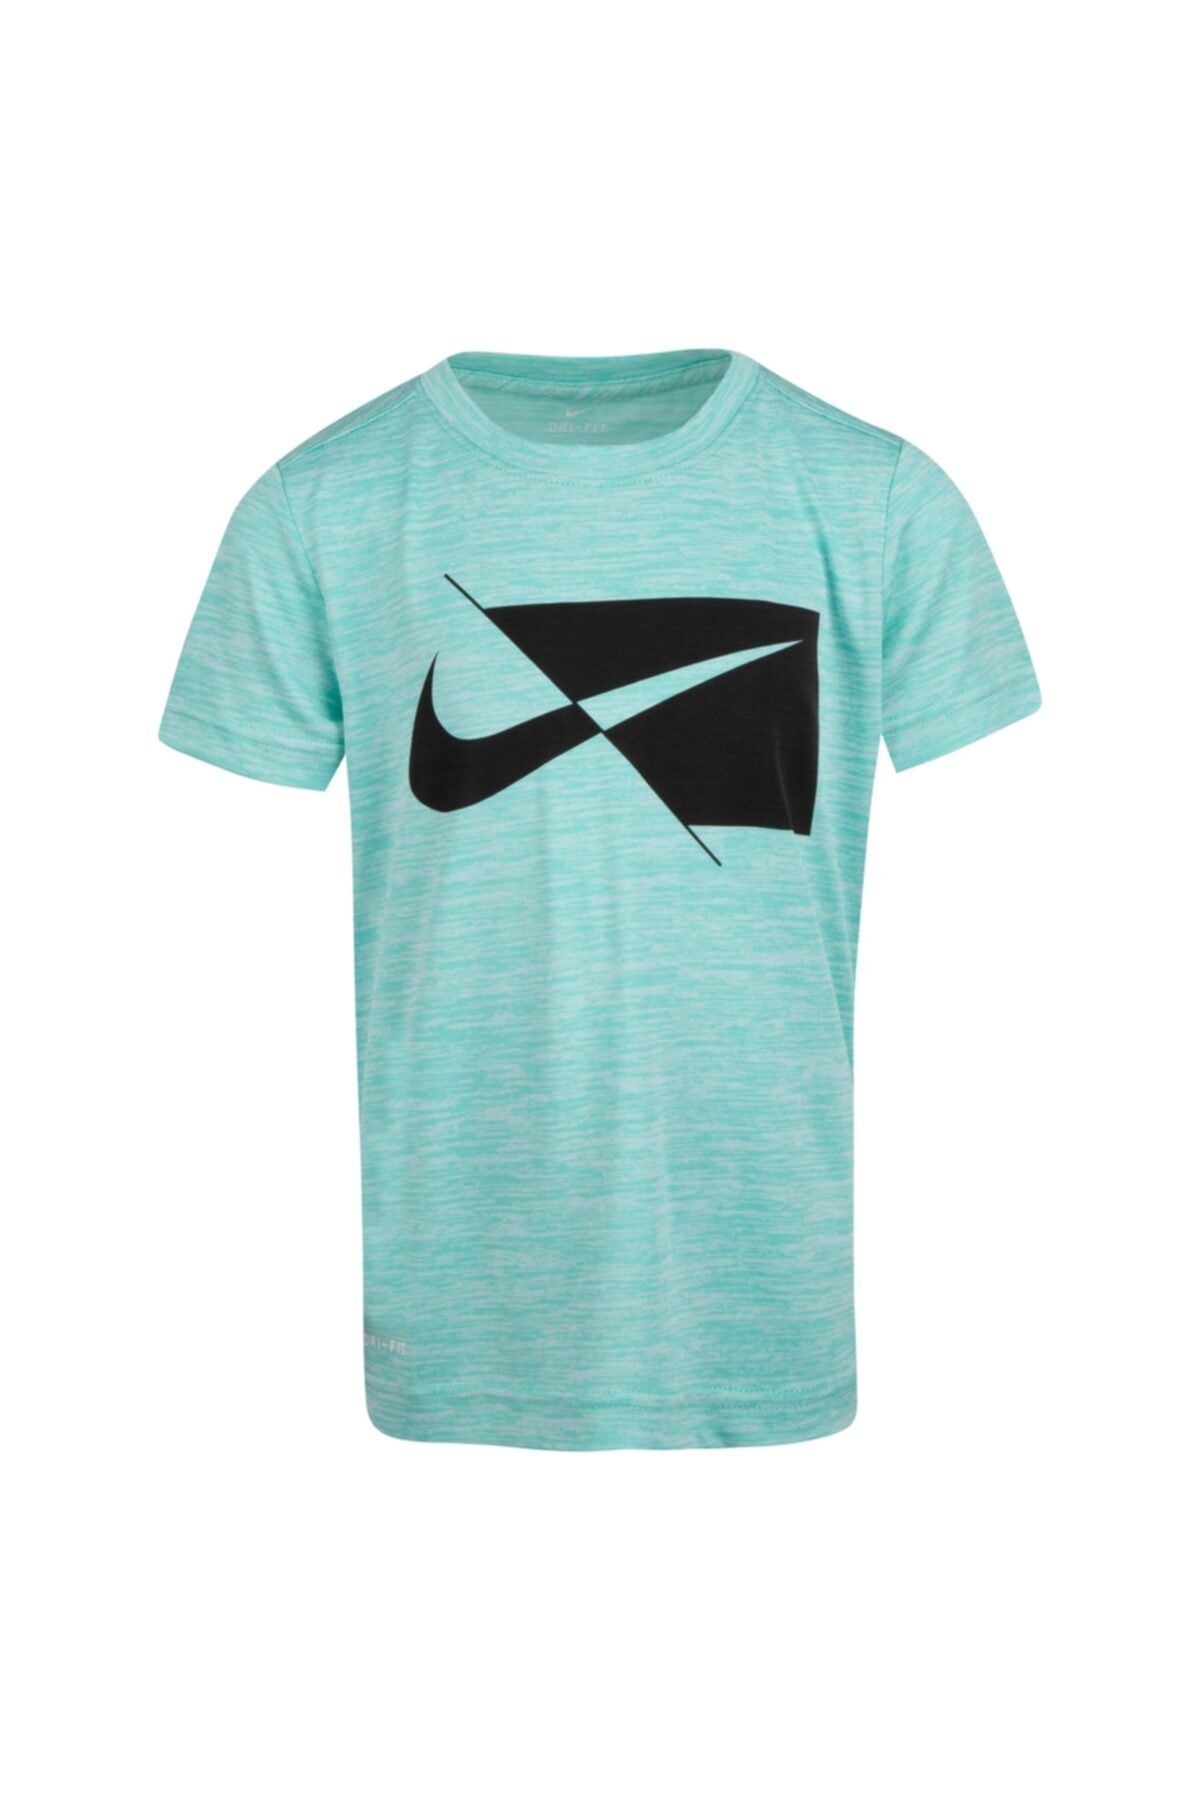 Nike Çocuk Dry Ss Top T-shirt